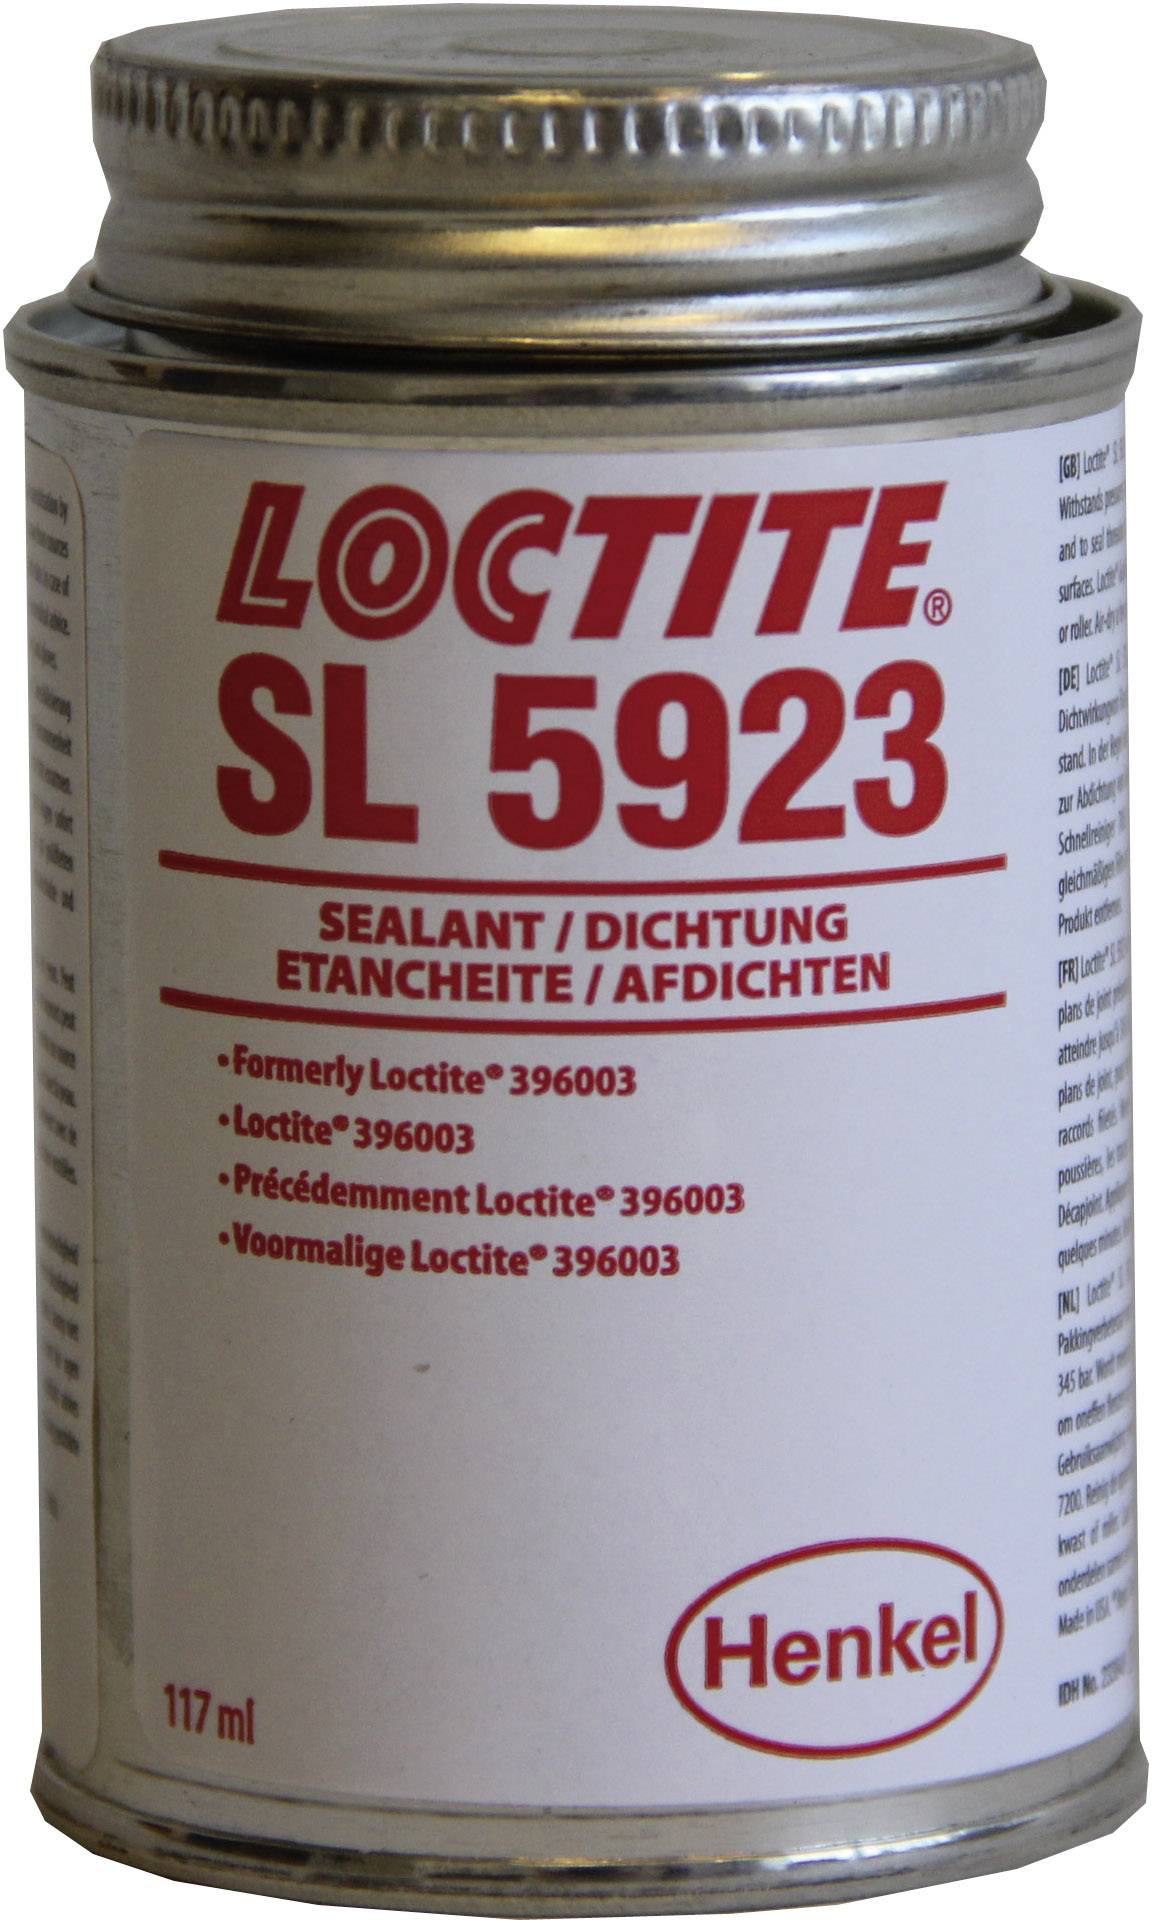 Loctite 5923 Flüssigdichtmasse